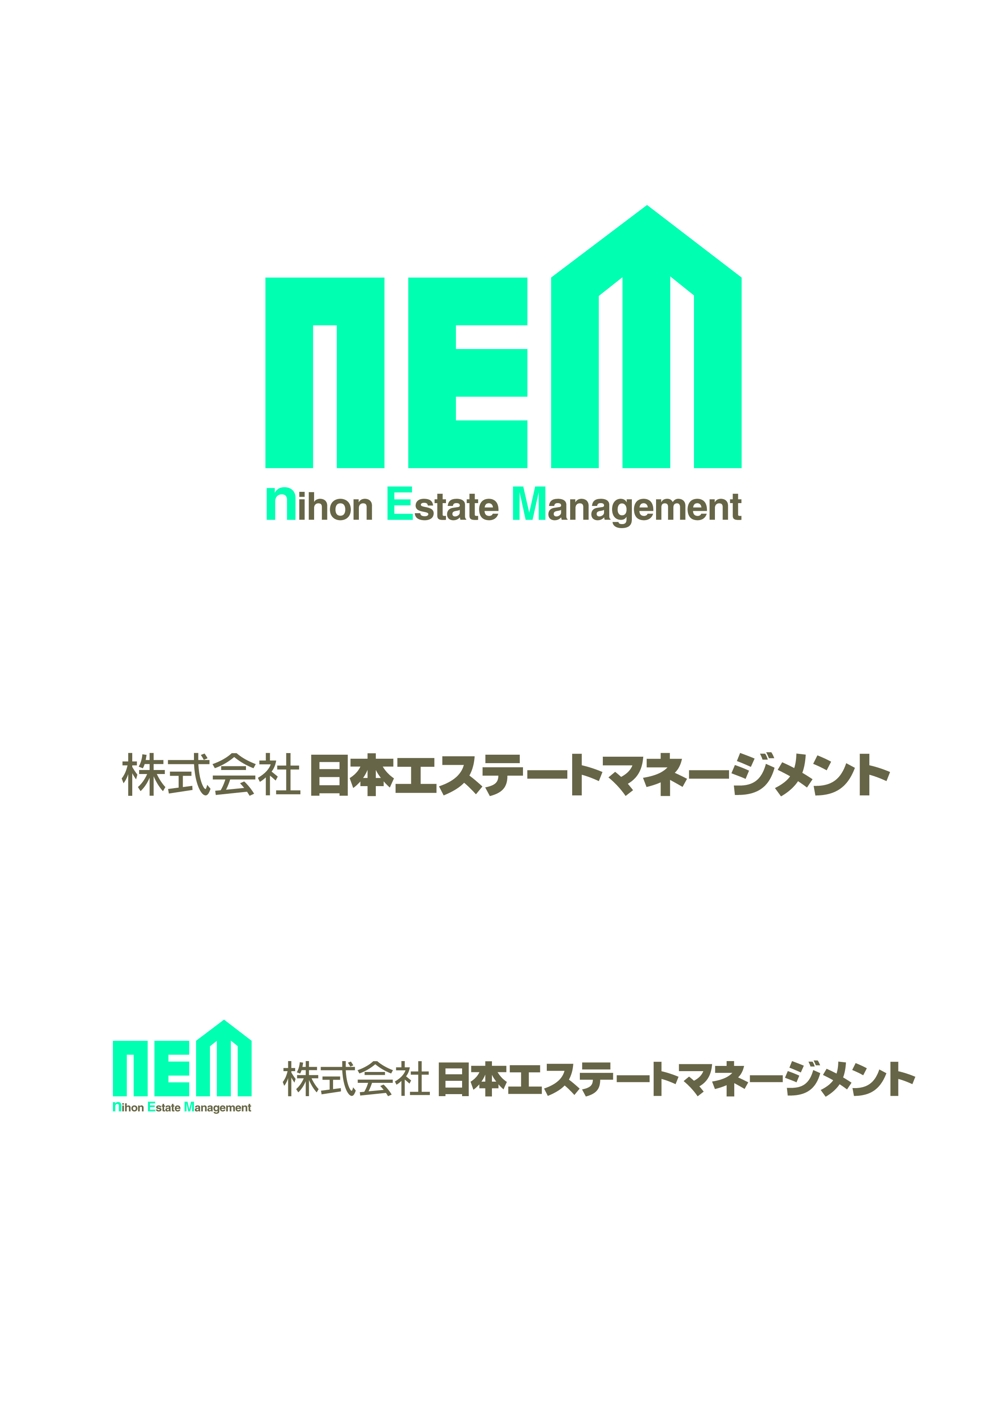 nEM-logo.jpg